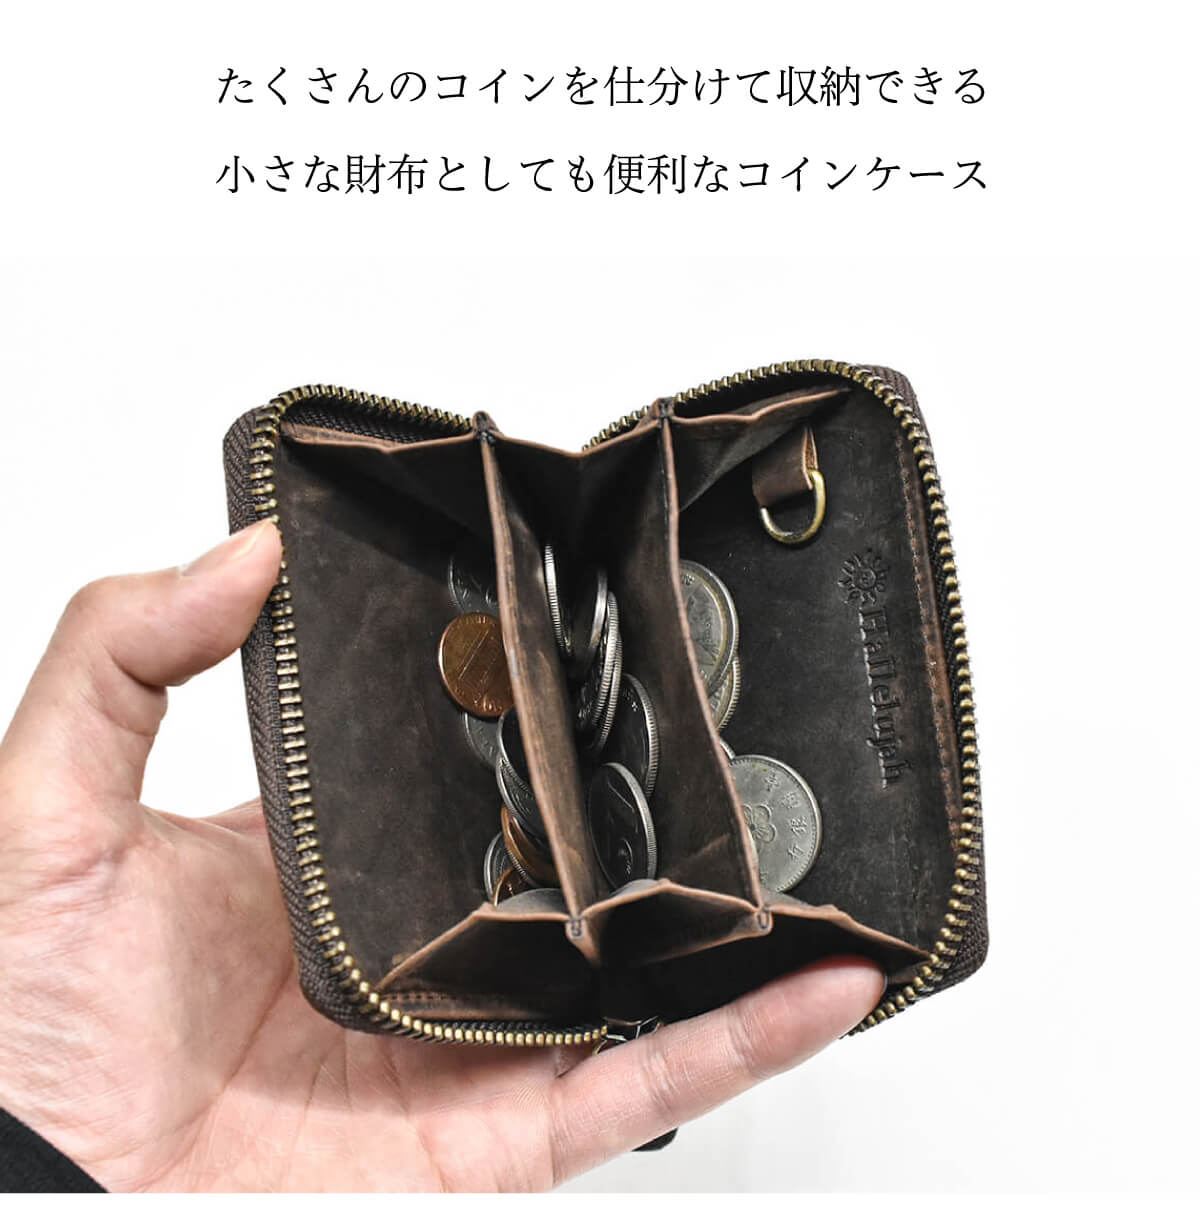 納得できる割引納得できる割引大人気☆カードケース 財布 コインケース レディース 黒 韓国 折り財布